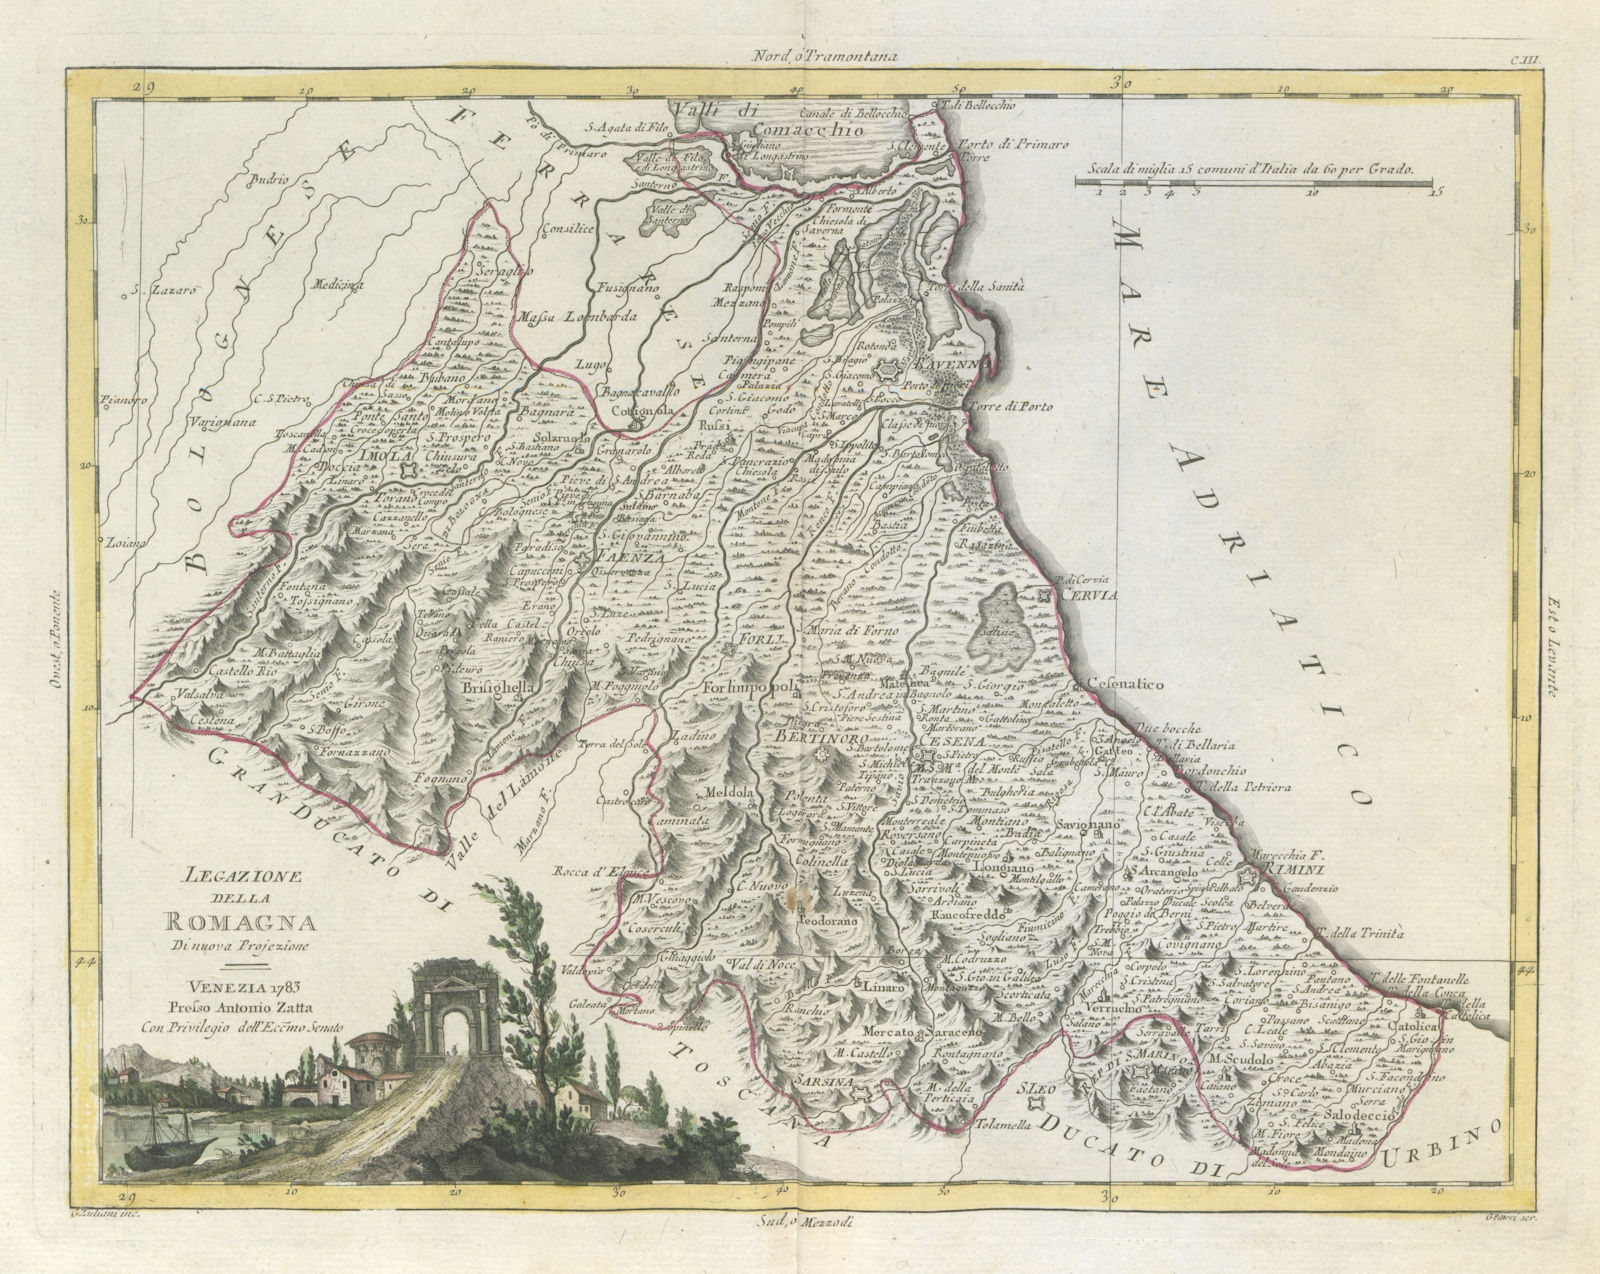 "Legazione della Romagna". Legation of Romagna, Italy. ZATTA 1784 old map